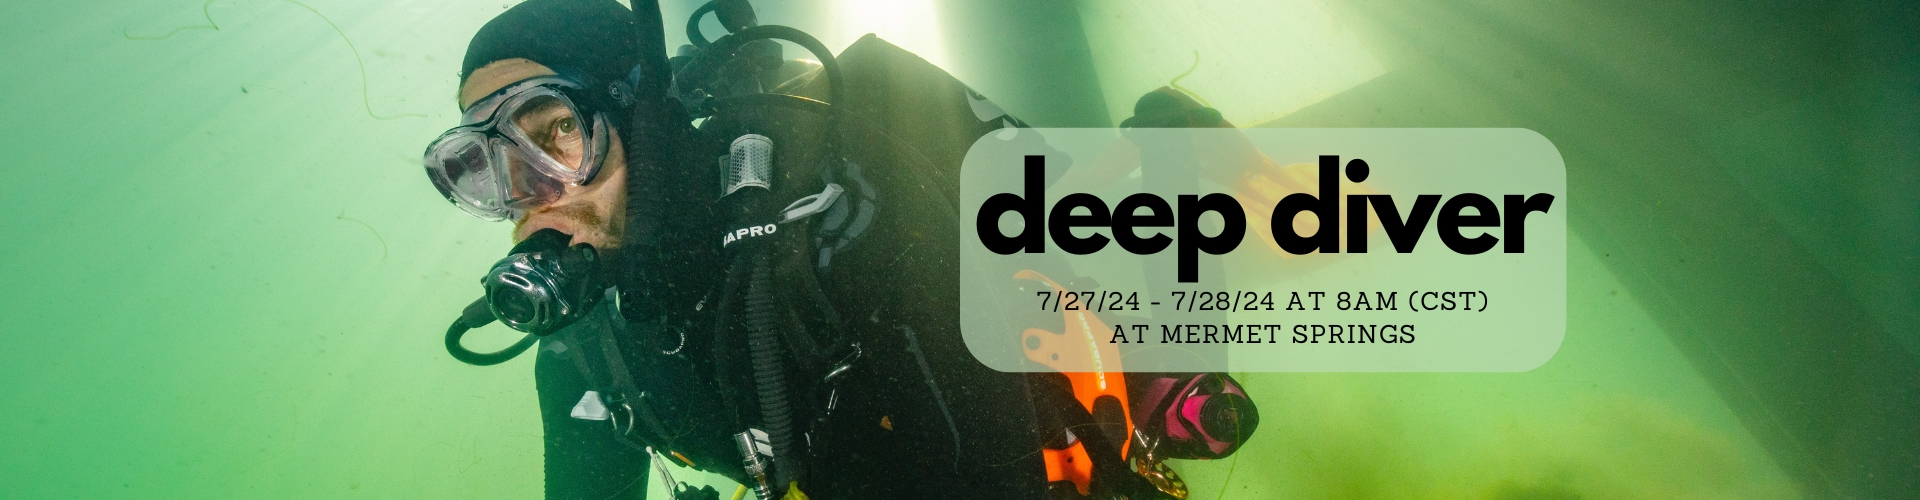 7/27 Deep Diver